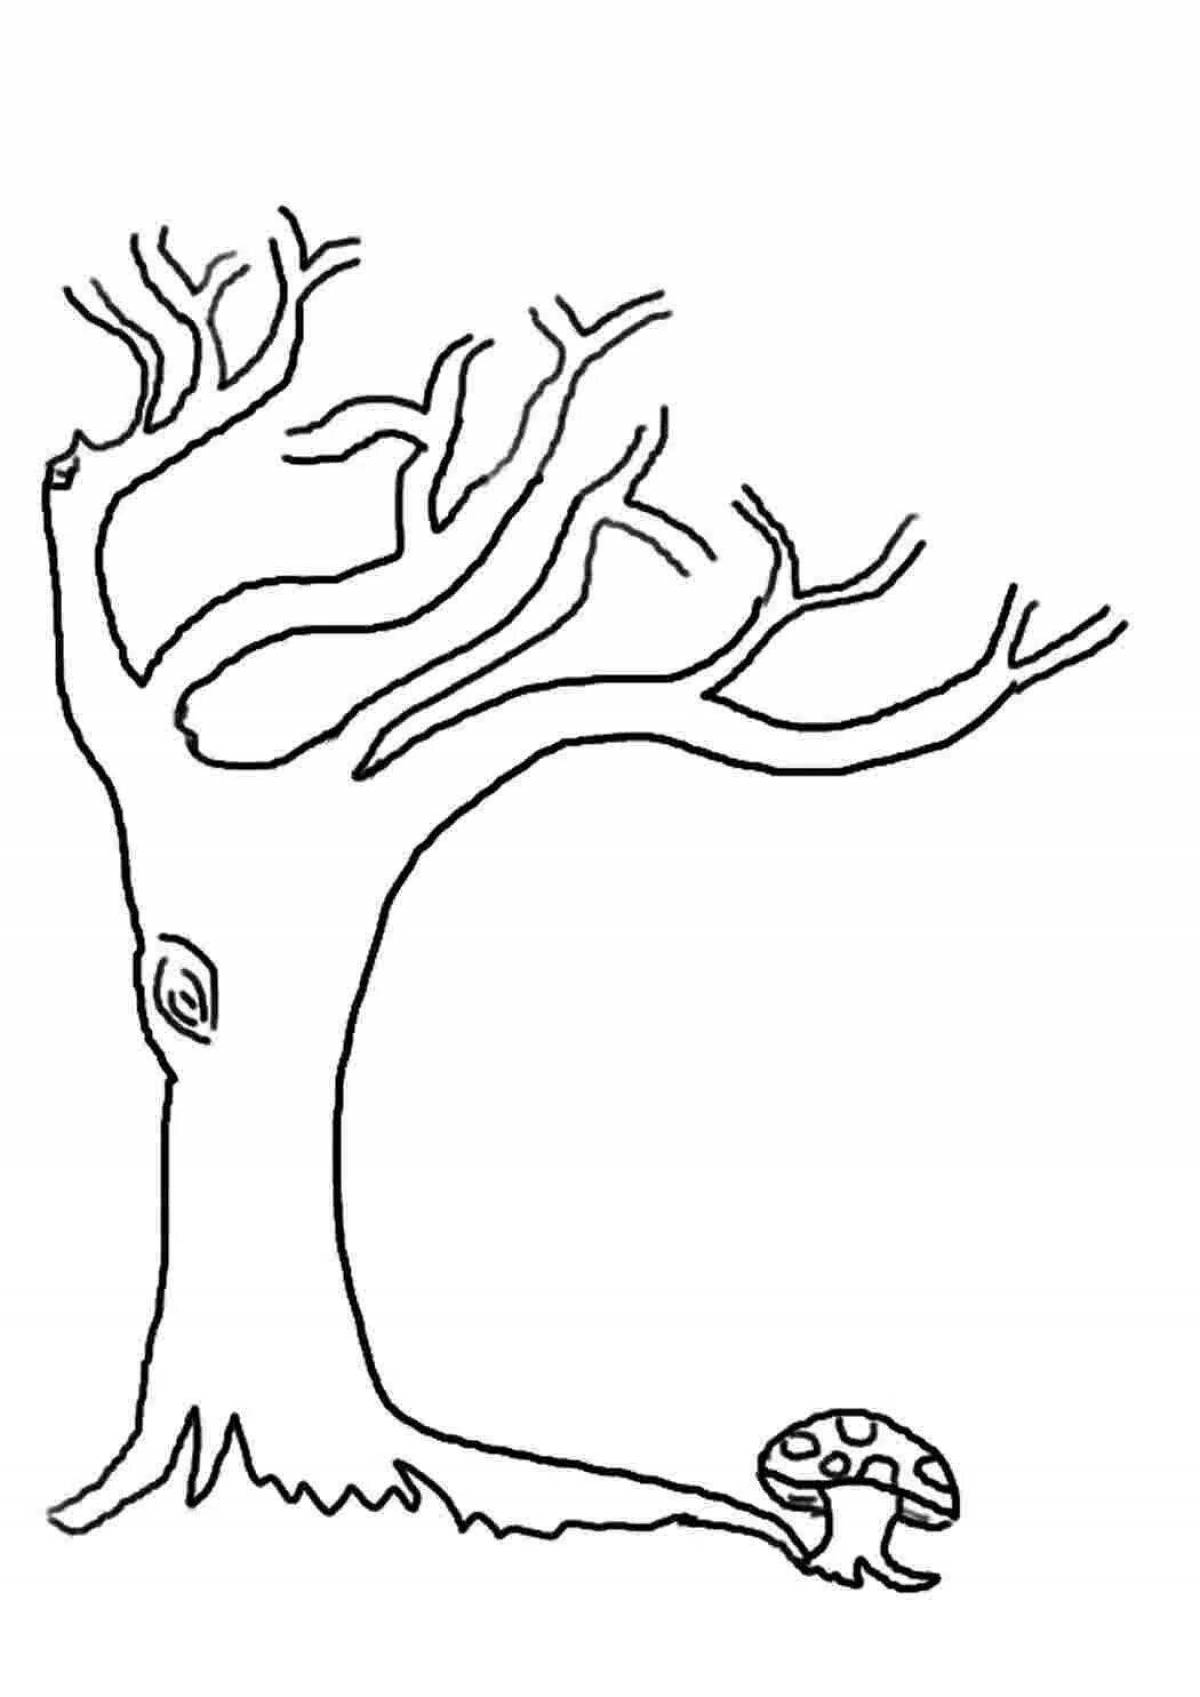 Грандиозная раскраска дерево без листьев